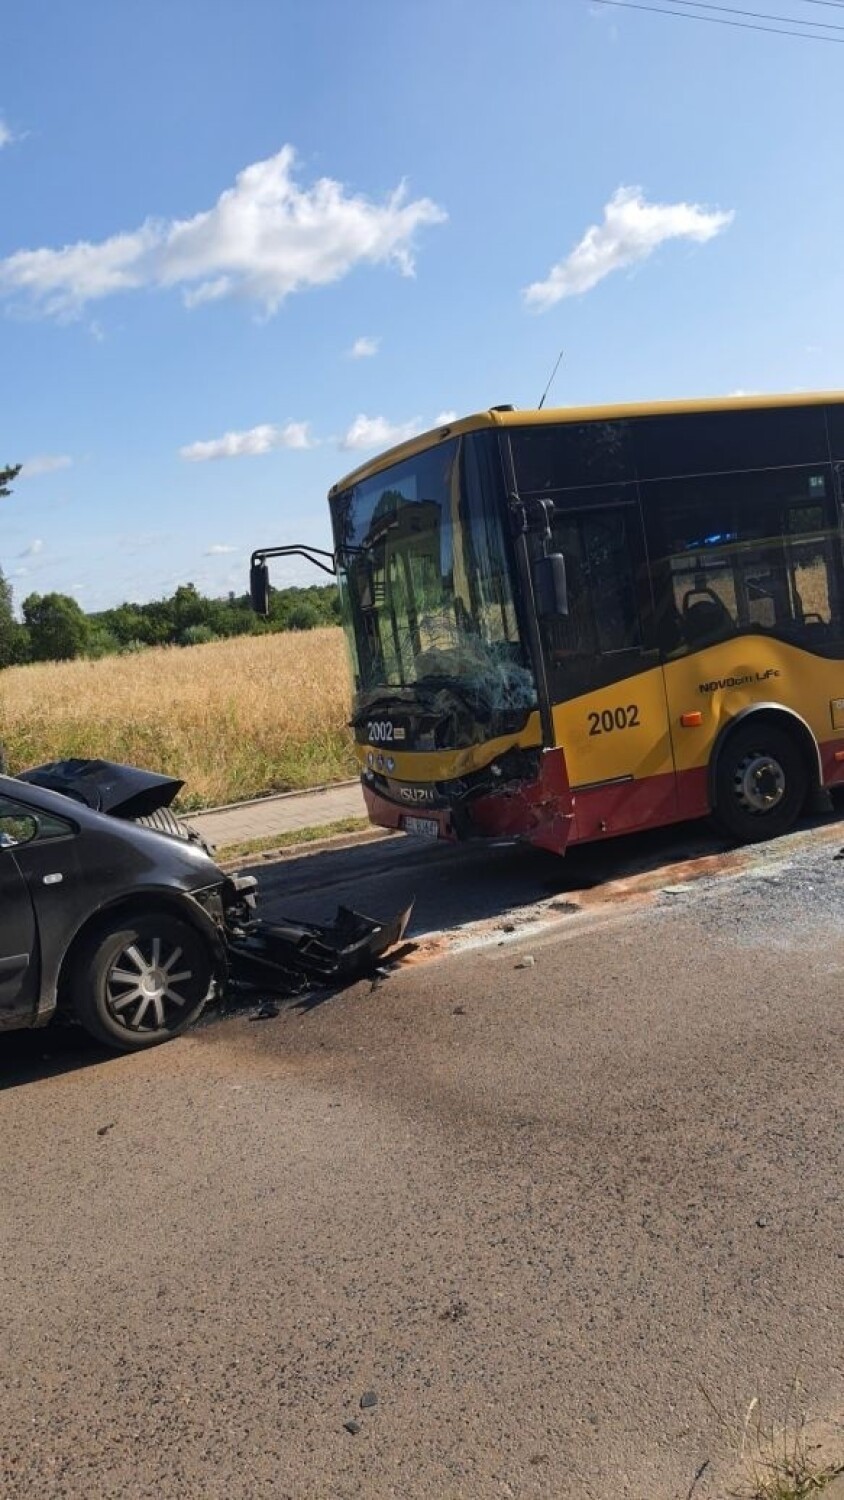 Samochód osobowy zderzył się czołowo z Autobusem MPK Łódź. Ranni przewiezieni do szpitala